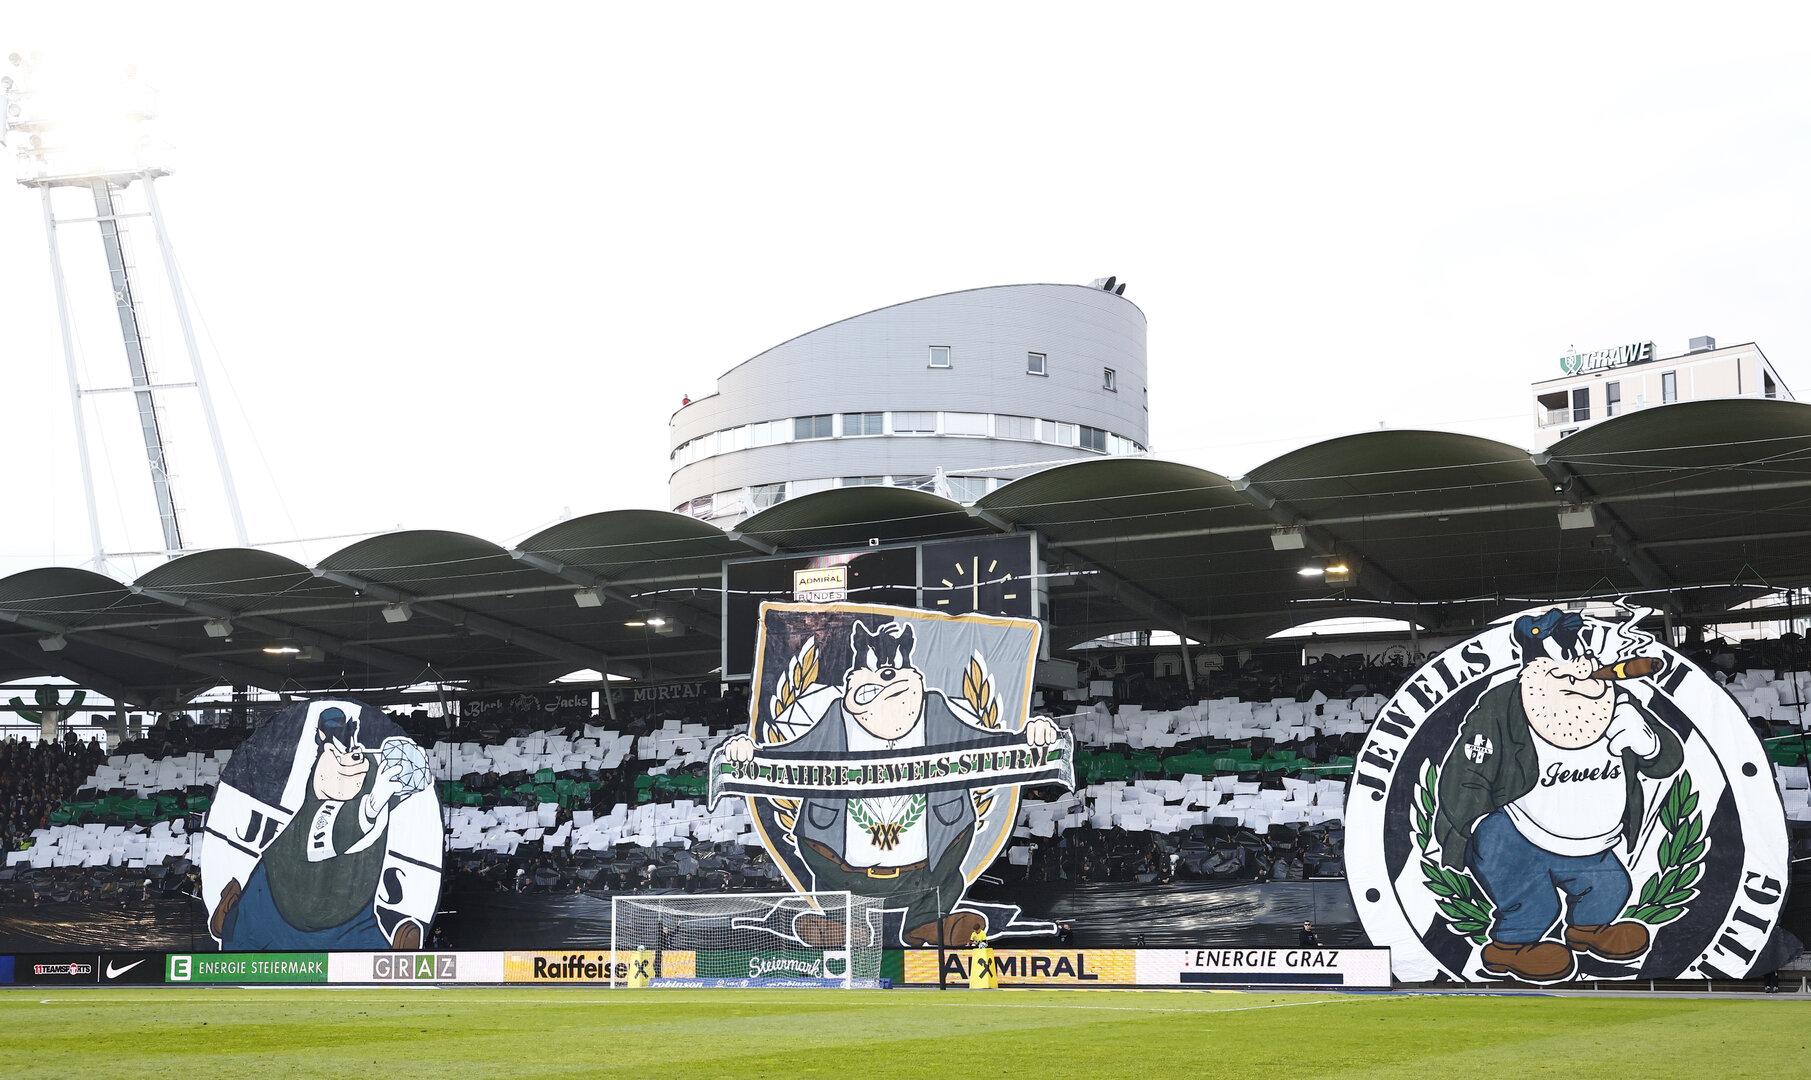 Nach Sturms Cupsieg: Was bewegt sich in der Stadionfrage in Graz?